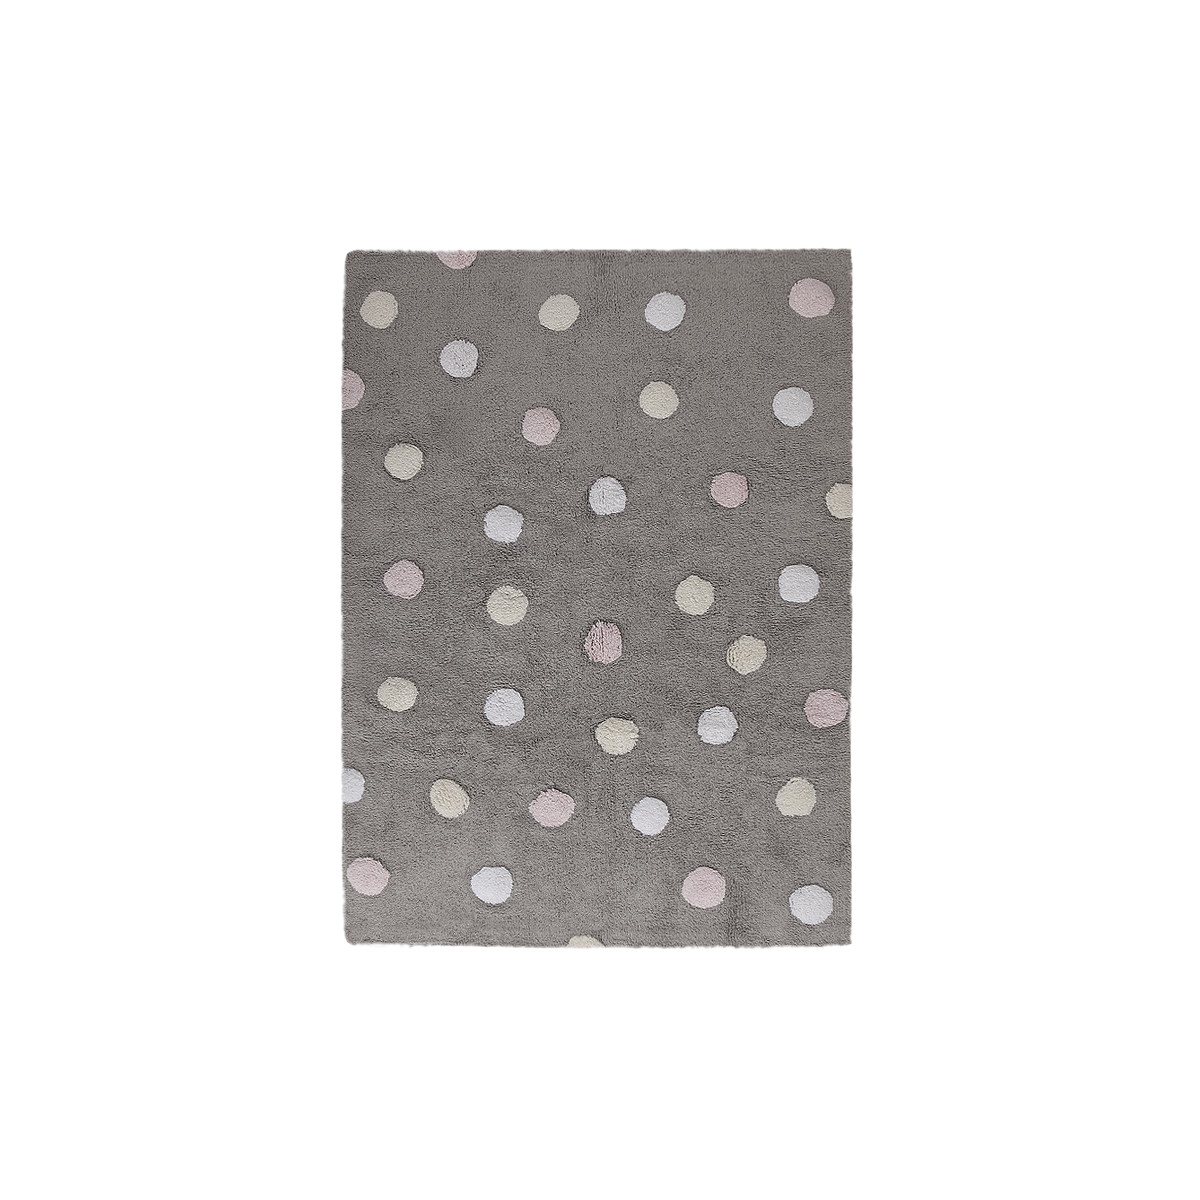 AKCE: 120x160 cm Pro zvířata: Pratelný koberec Tricolor Polka Dots Grey-Pink